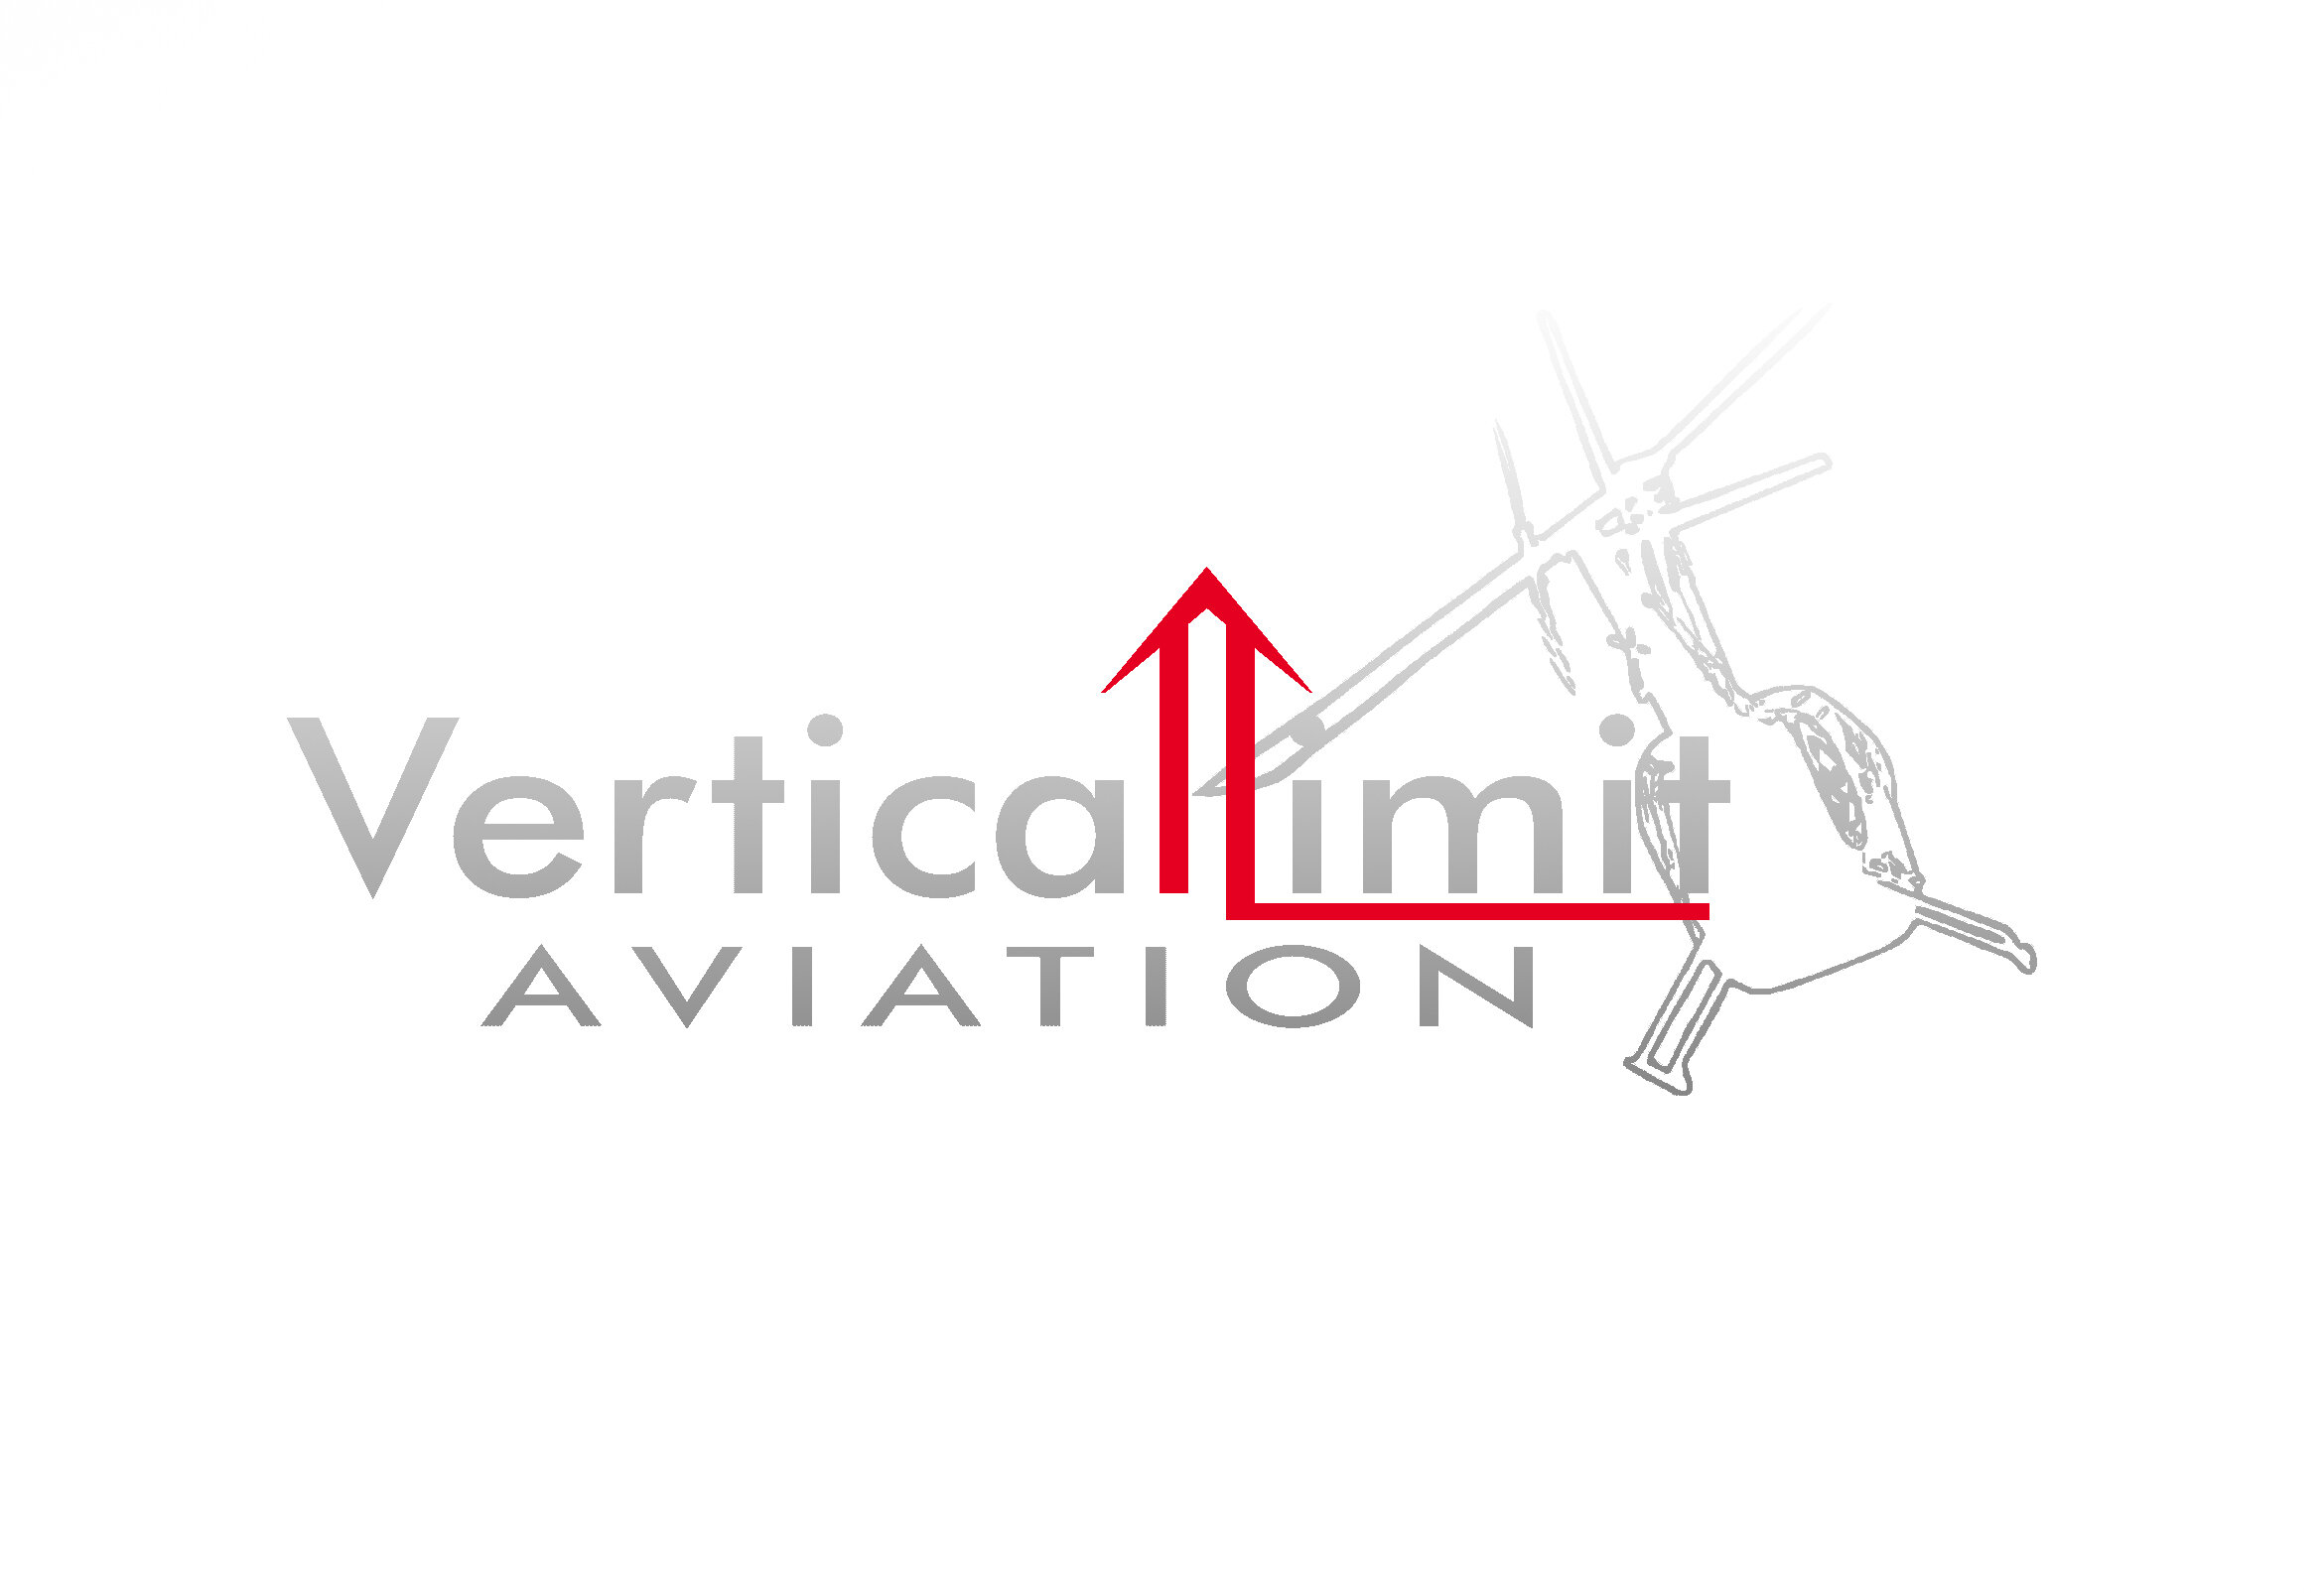 Vertical Limit Aviation Logo Gradient Red.jpg